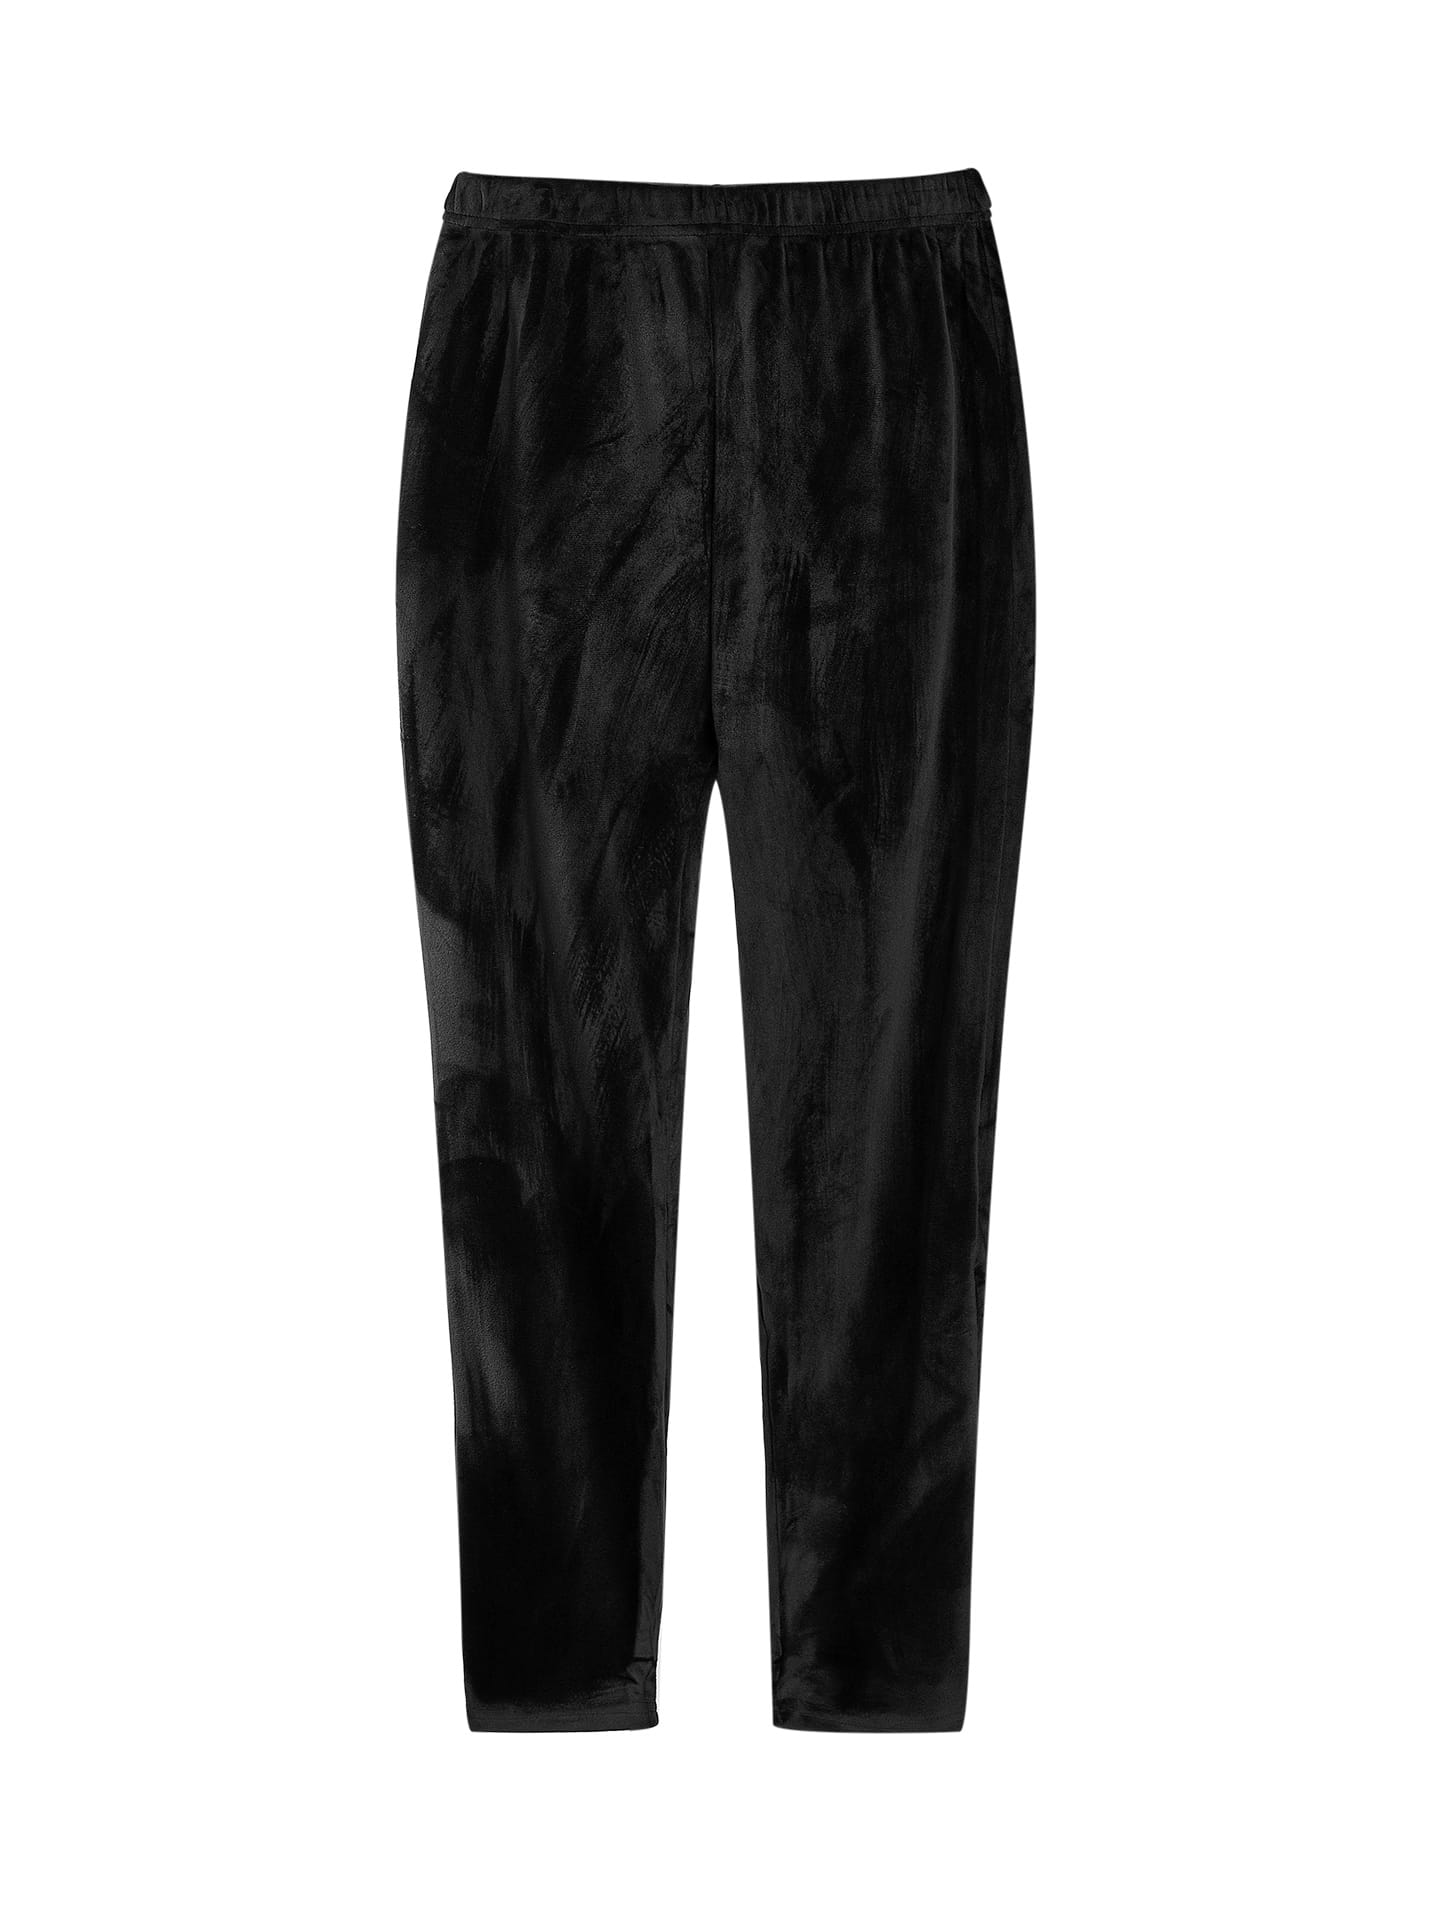 Velvet leggings curvy in black, 5.99€